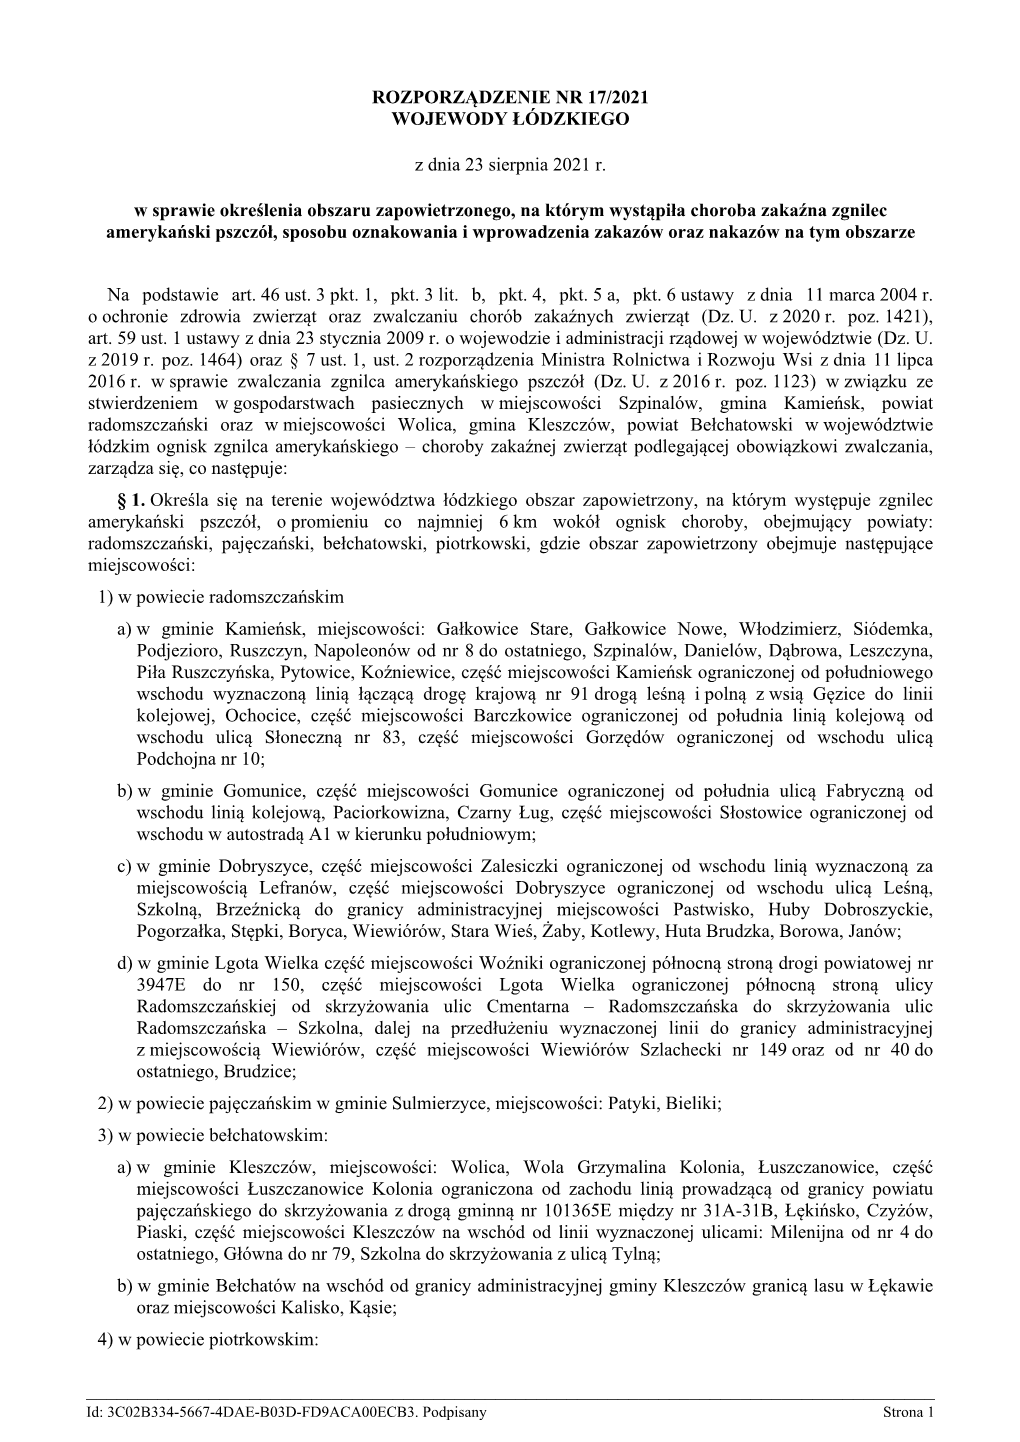 Rozporządzenie Nr 17/2021 Wojewody Łódzkiego